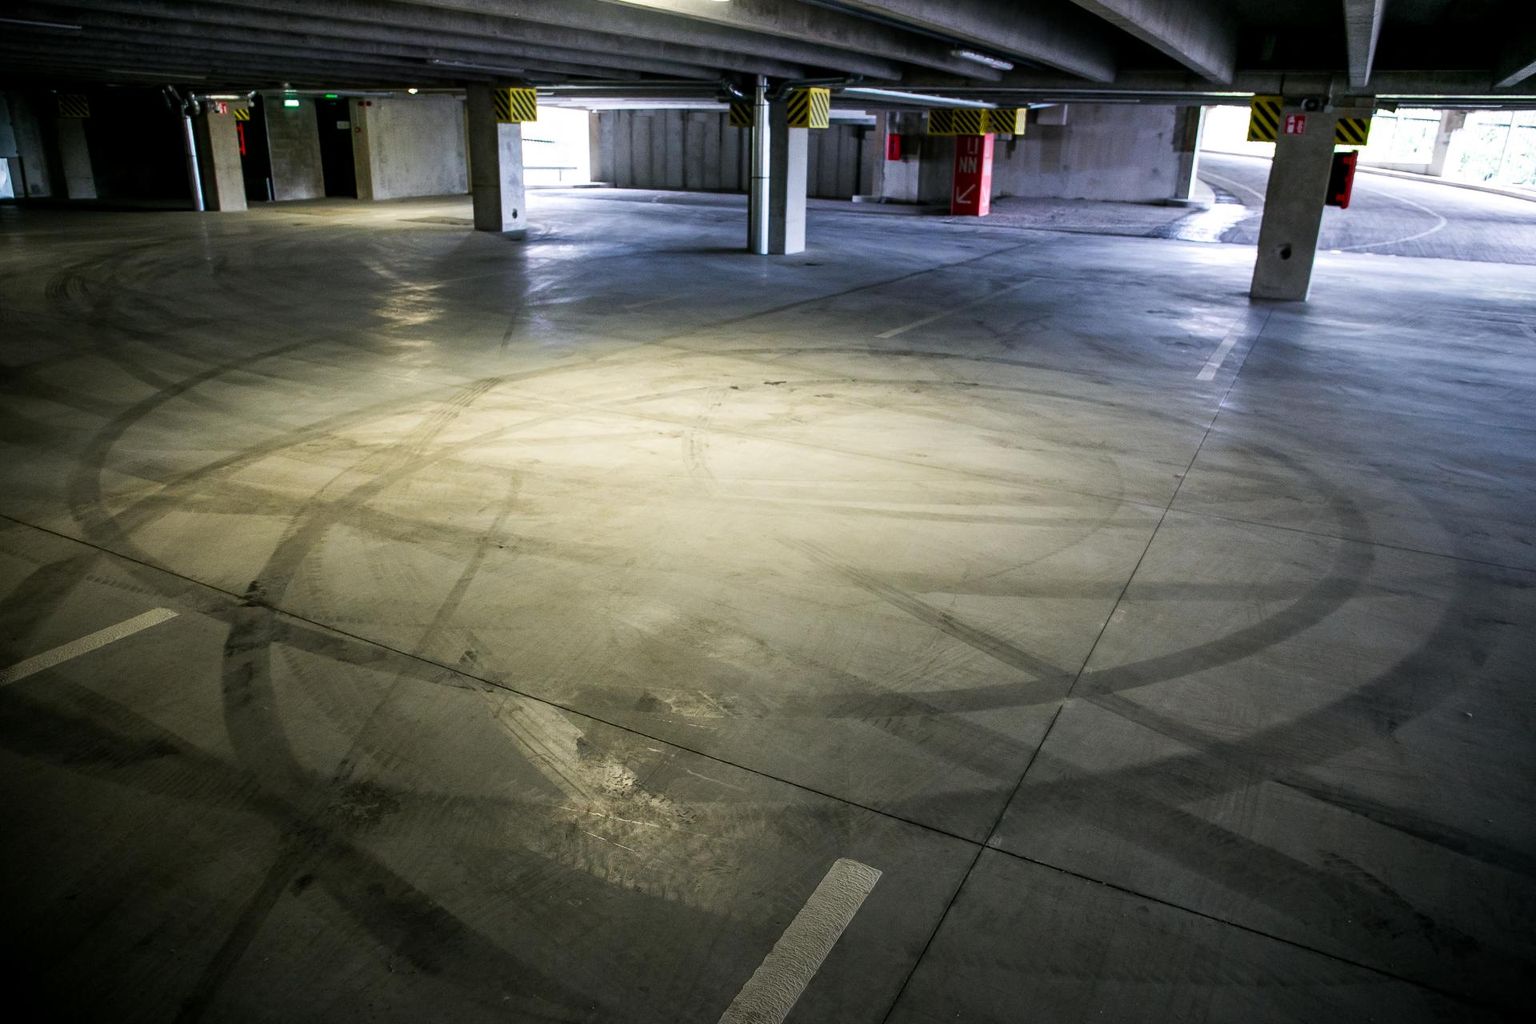 Päevasel ajal vaikses parkimis­majas annavad öisest huligaanitsemisest märku jäljed põrandal.